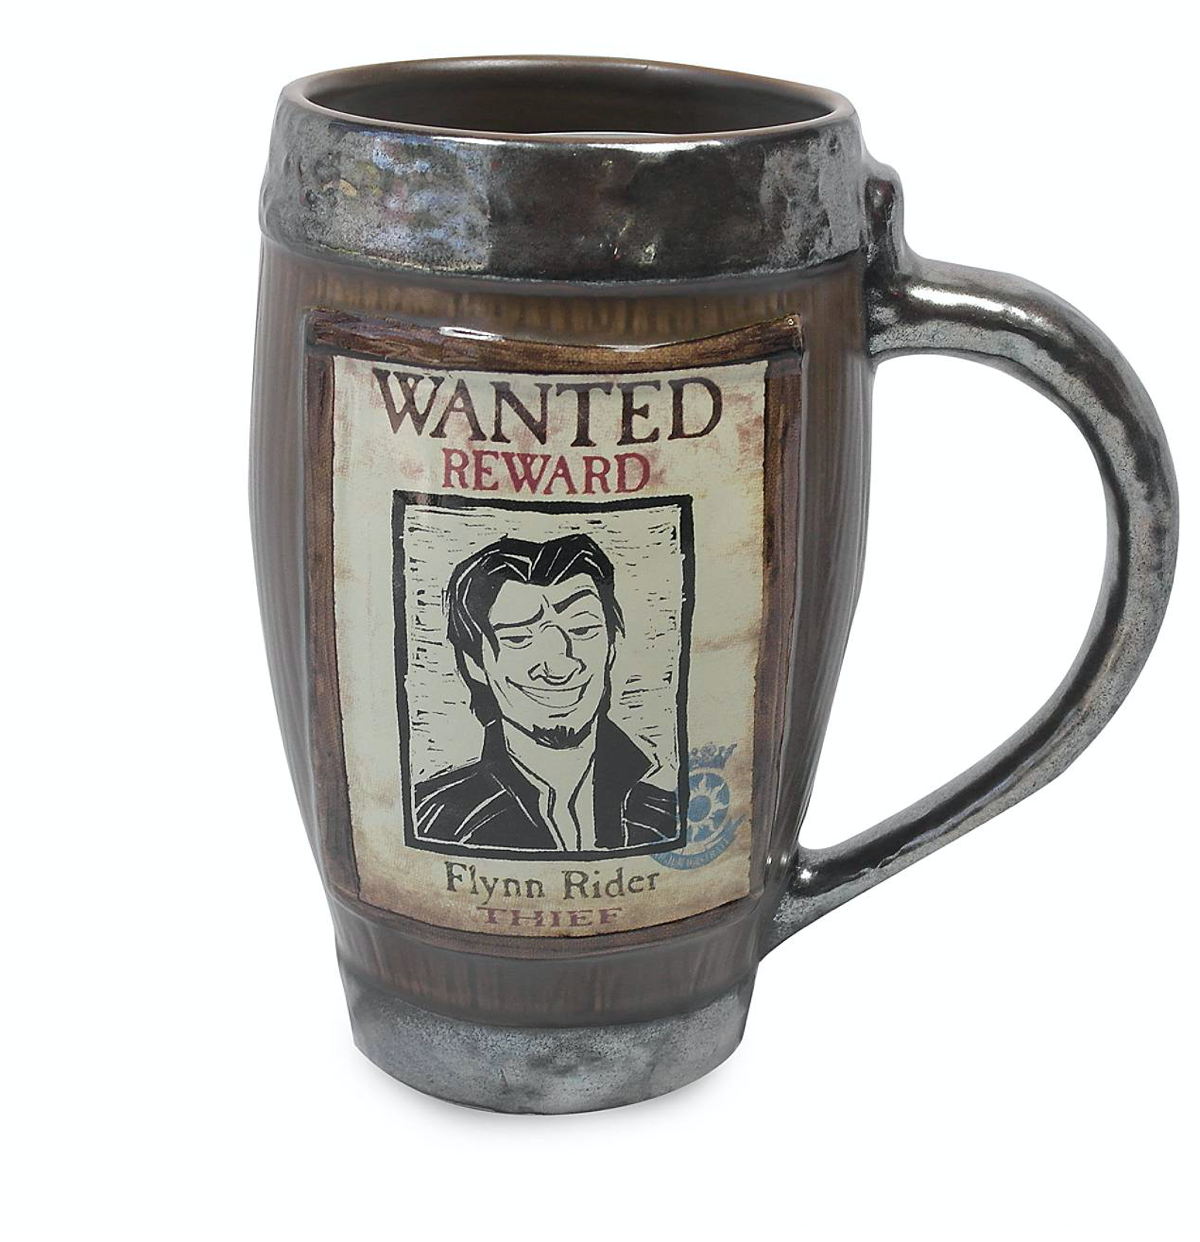 Disney 10th Tangled Rapunzel Wanted Reward Flynn Rider Thief Coffee Mug New